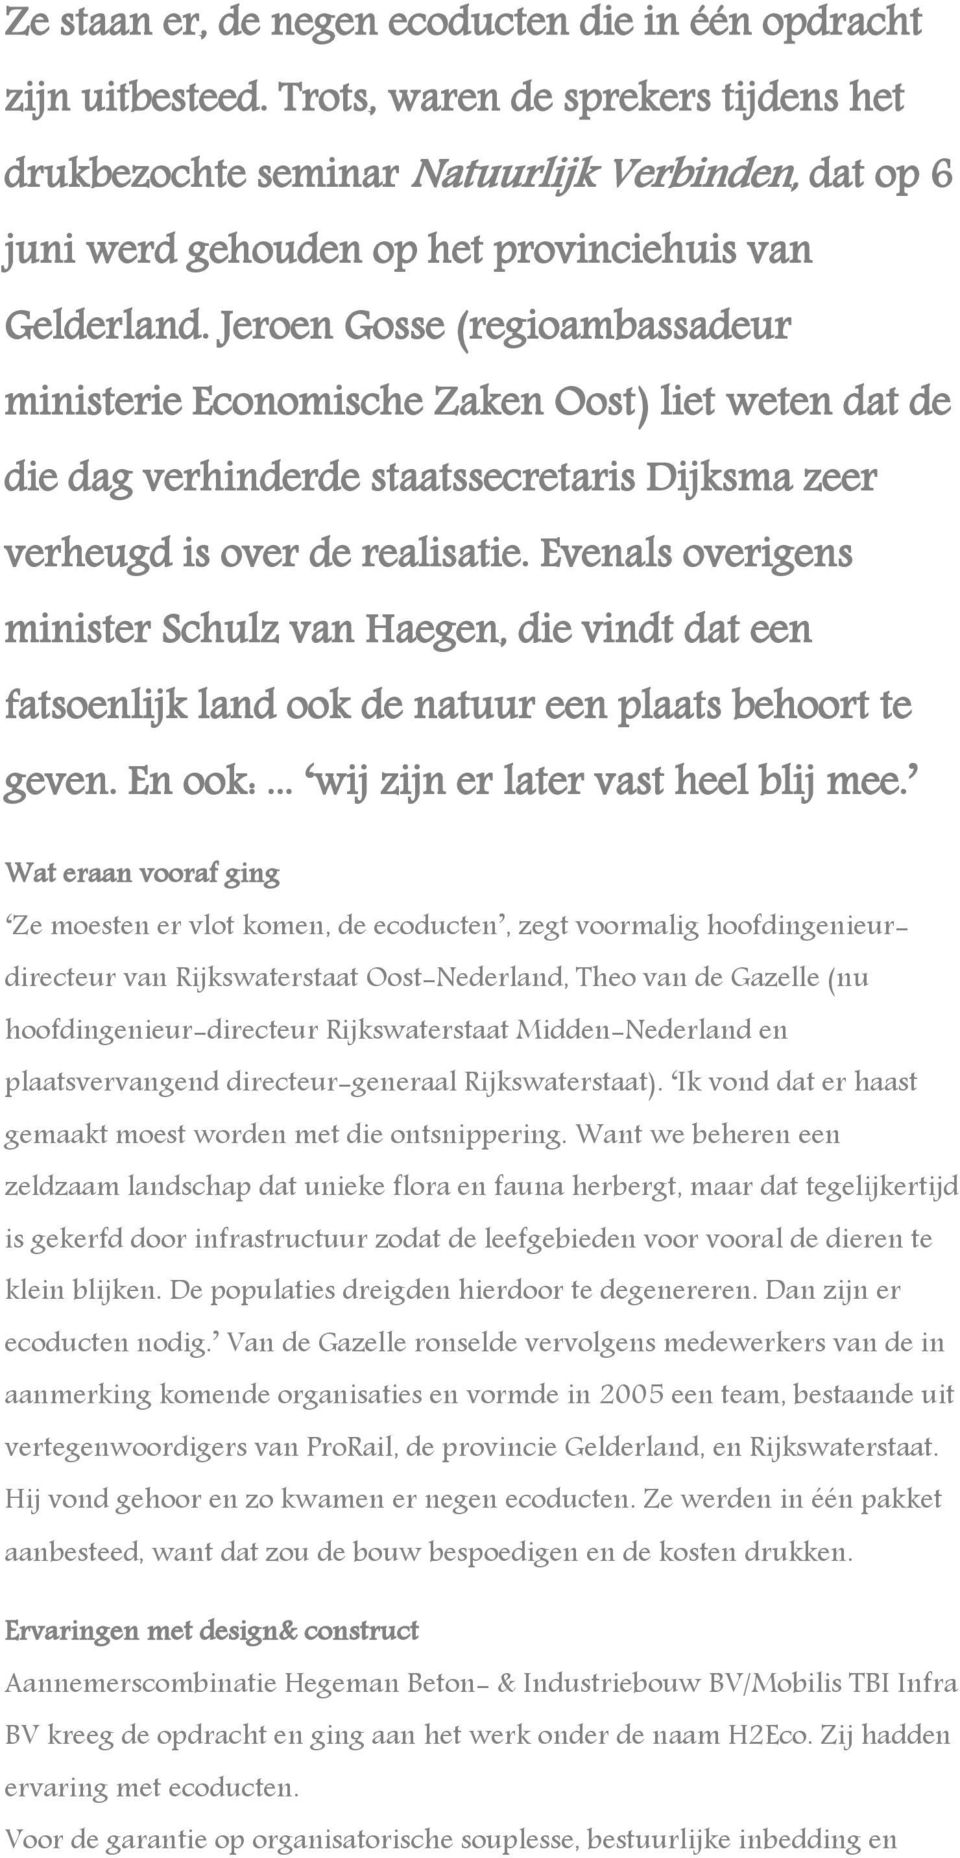 Jeroen Gosse (regioambassadeur ministerie Economische Zaken Oost) liet weten dat de die dag verhinderde staatssecretaris Dijksma zeer verheugd is over de realisatie.